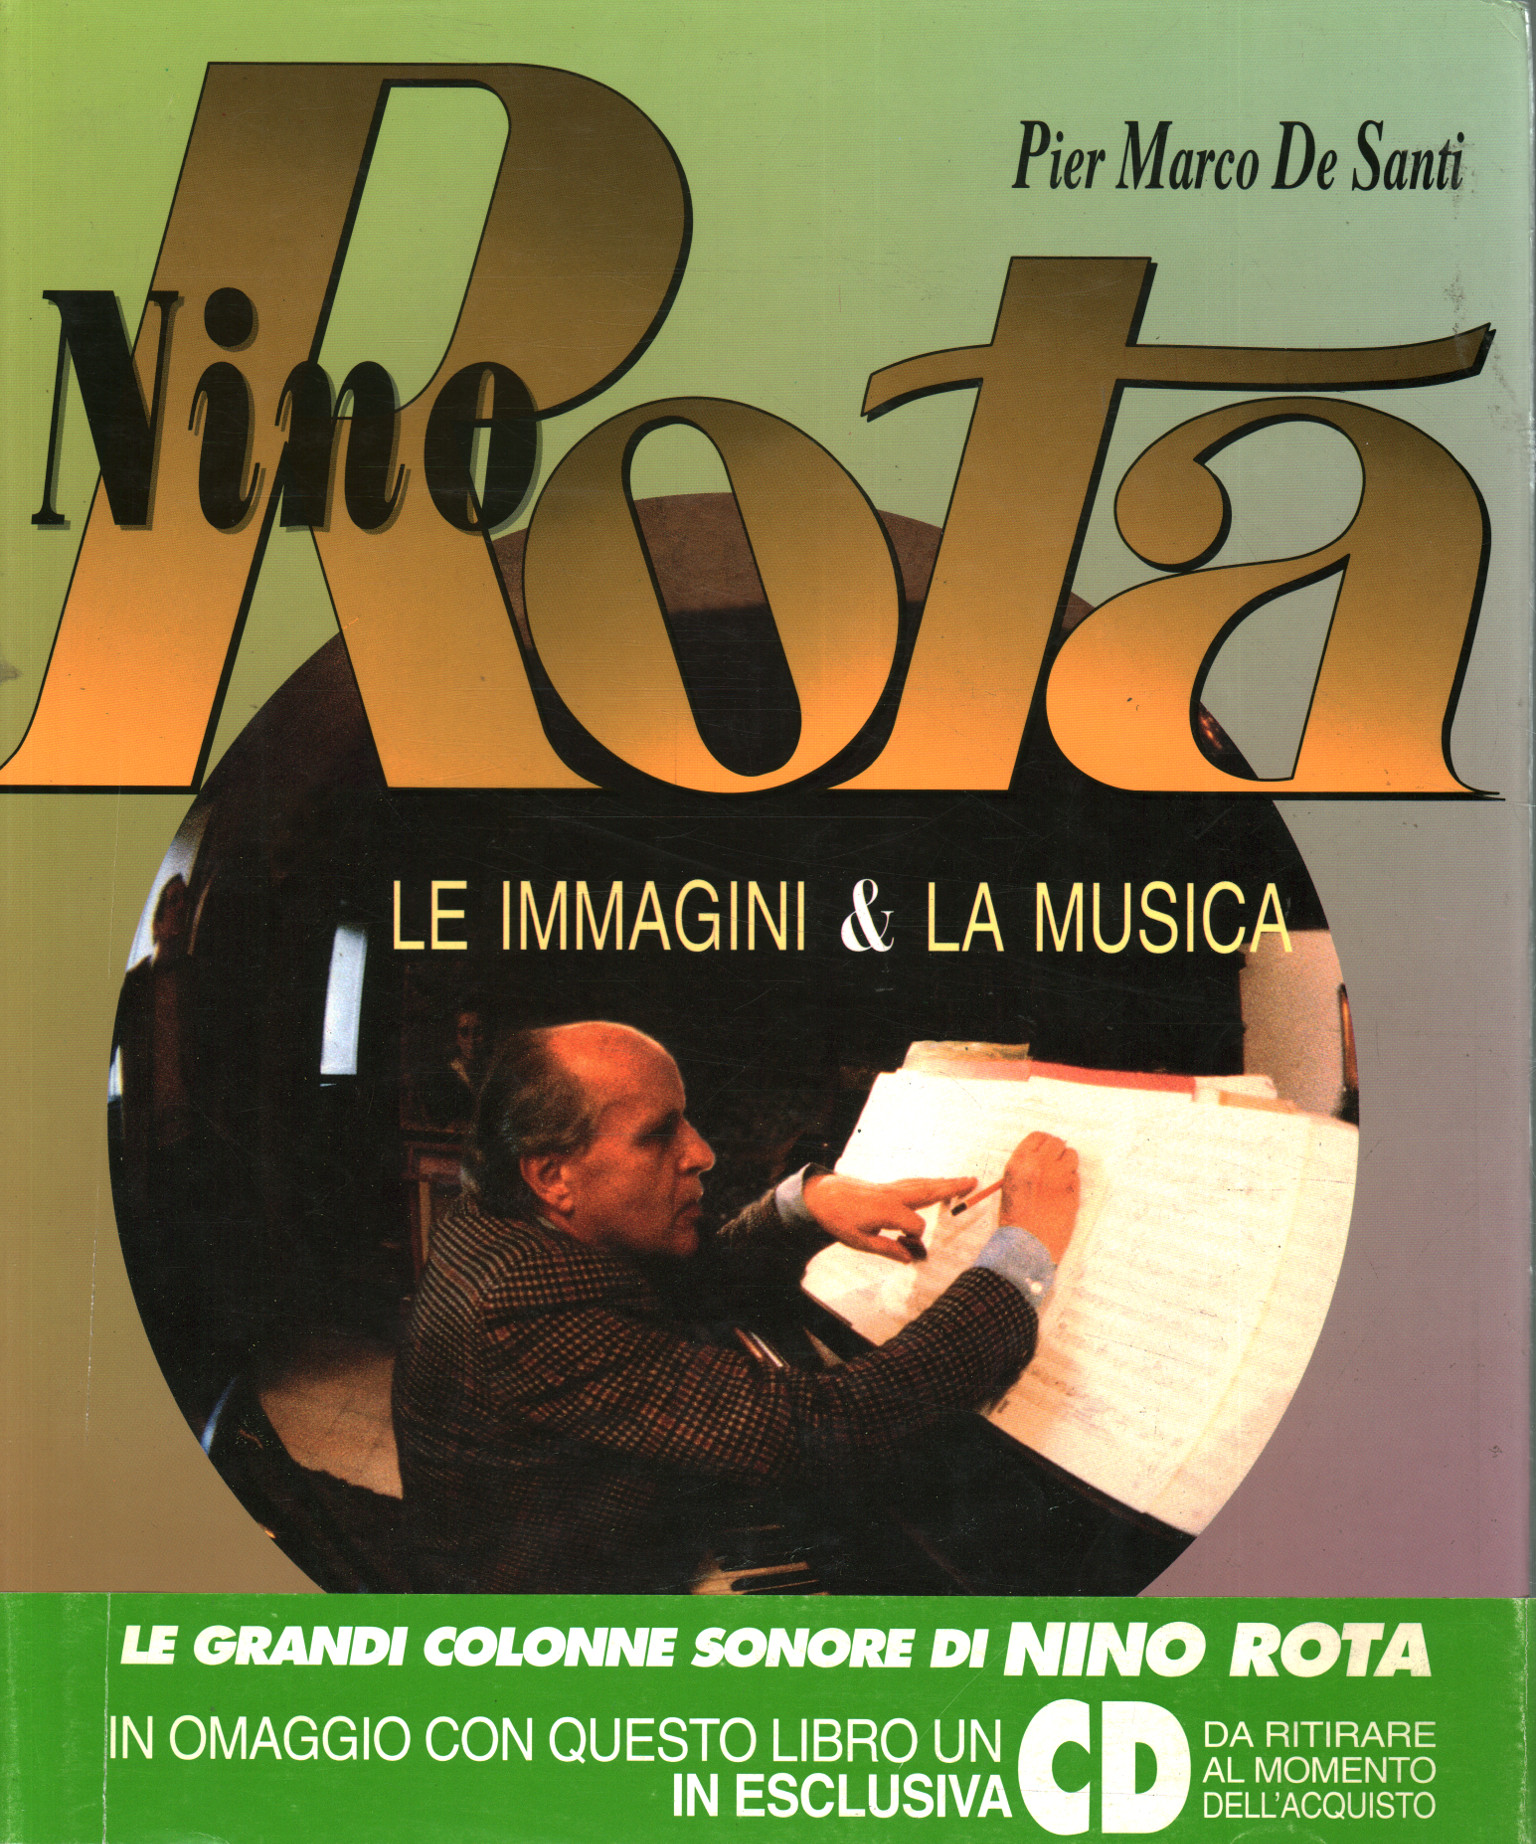 Nino Rota. Bilder & Musik, Pier Marco De Santi